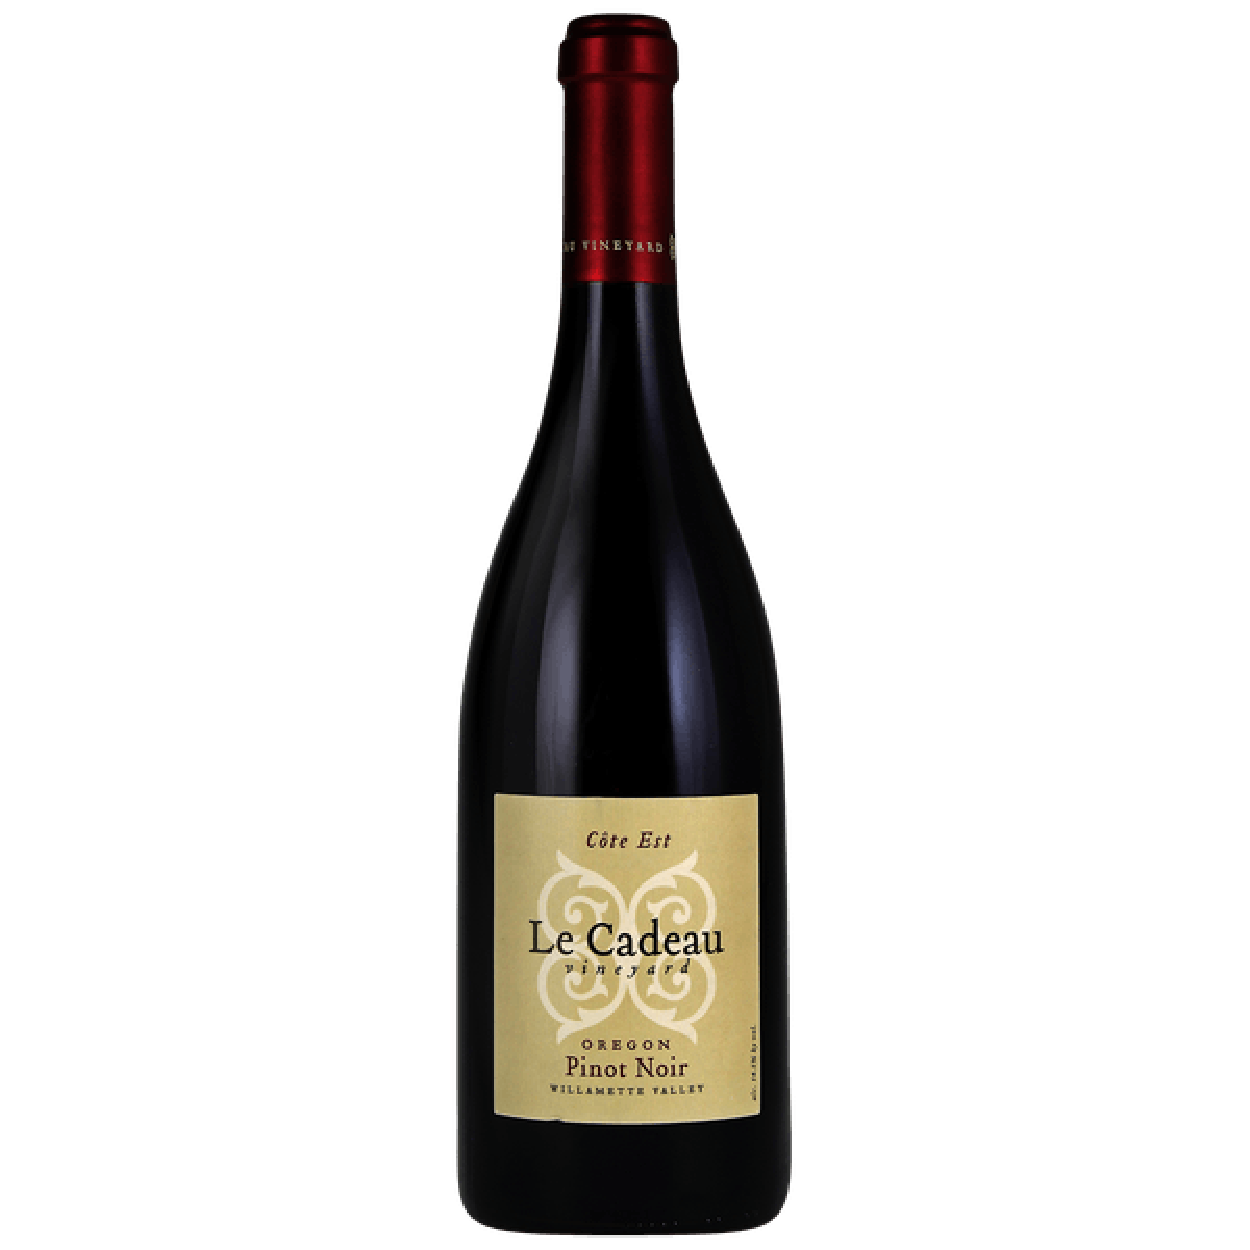 Wine Le Cadeau Cote Est Pinot Noir